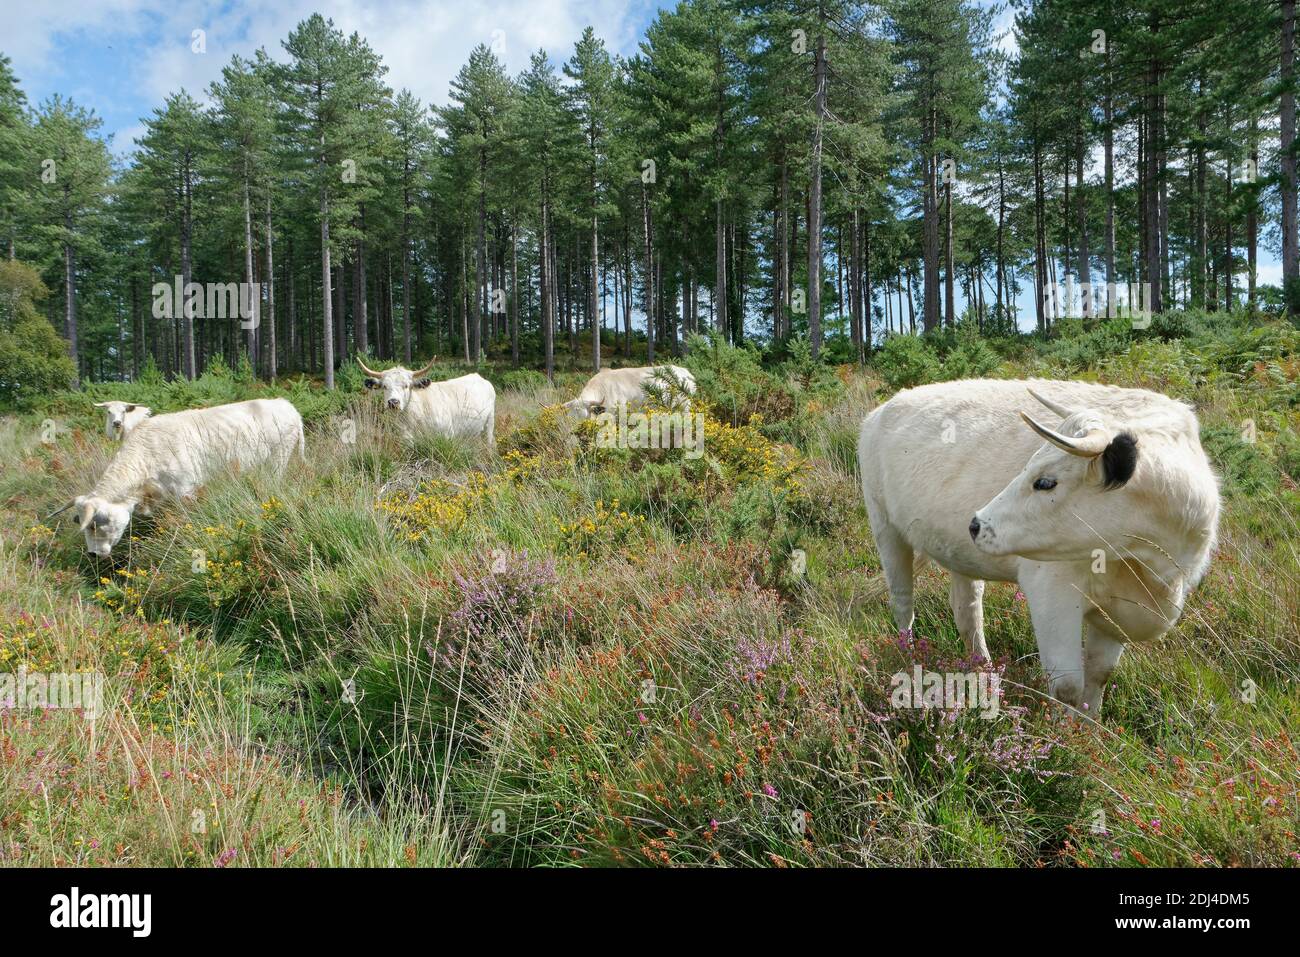 White Park (Bos taurus), une ancienne race britannique, paître la lande pour réduire la croissance des broussailles, Rempstone Heath, Dorset, Royaume-Uni, août. Banque D'Images